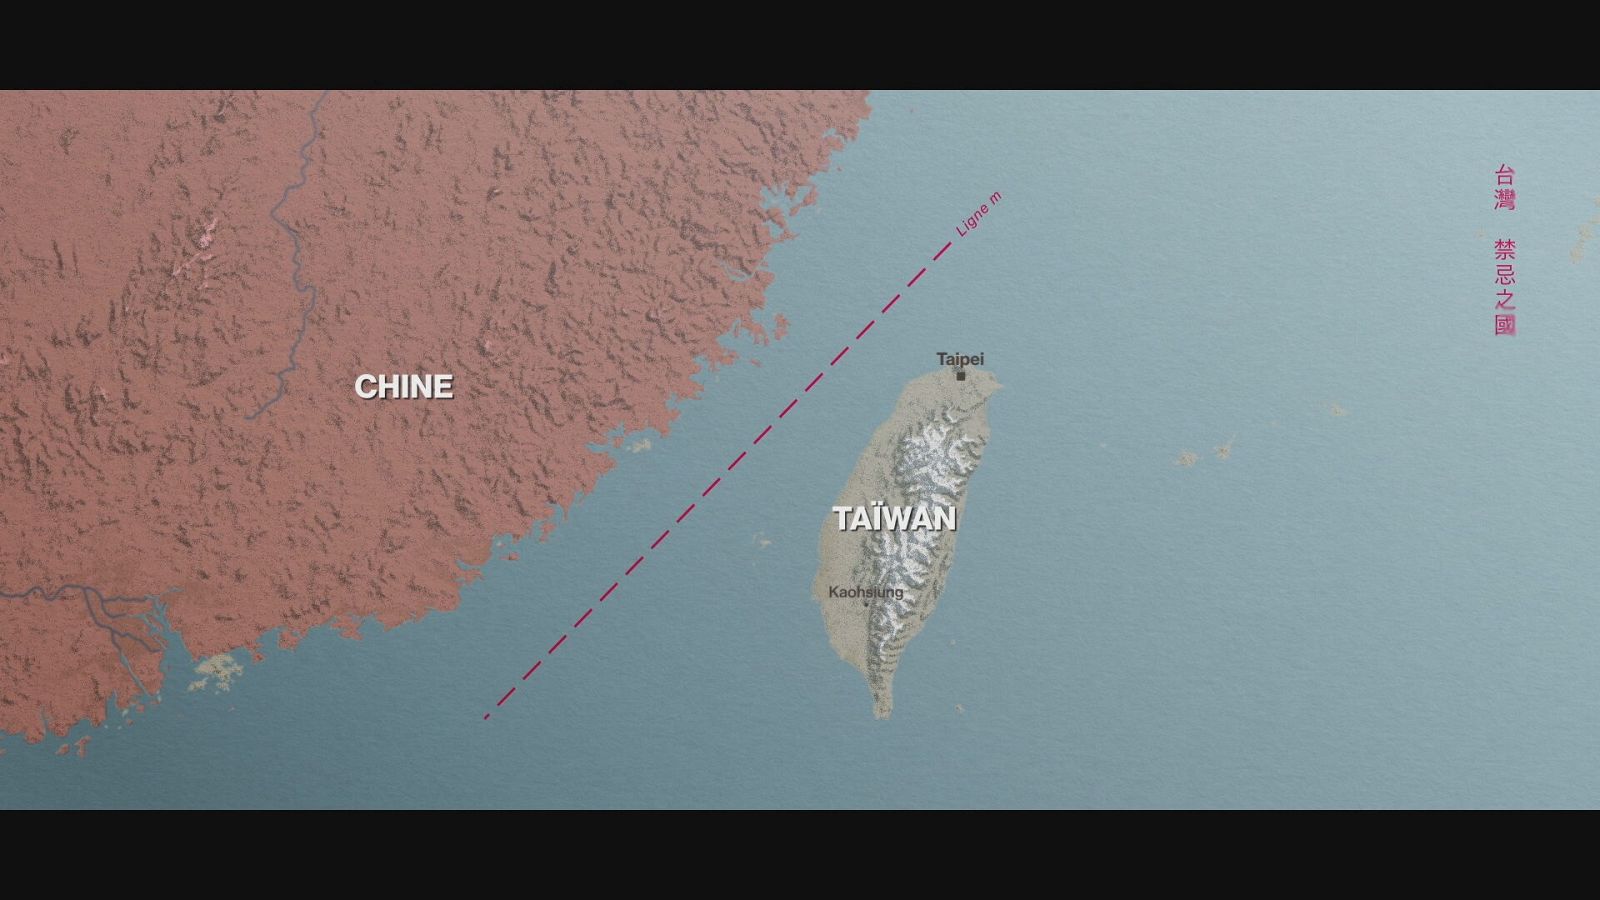 El estrecho de Formosa separa China de Taiwán